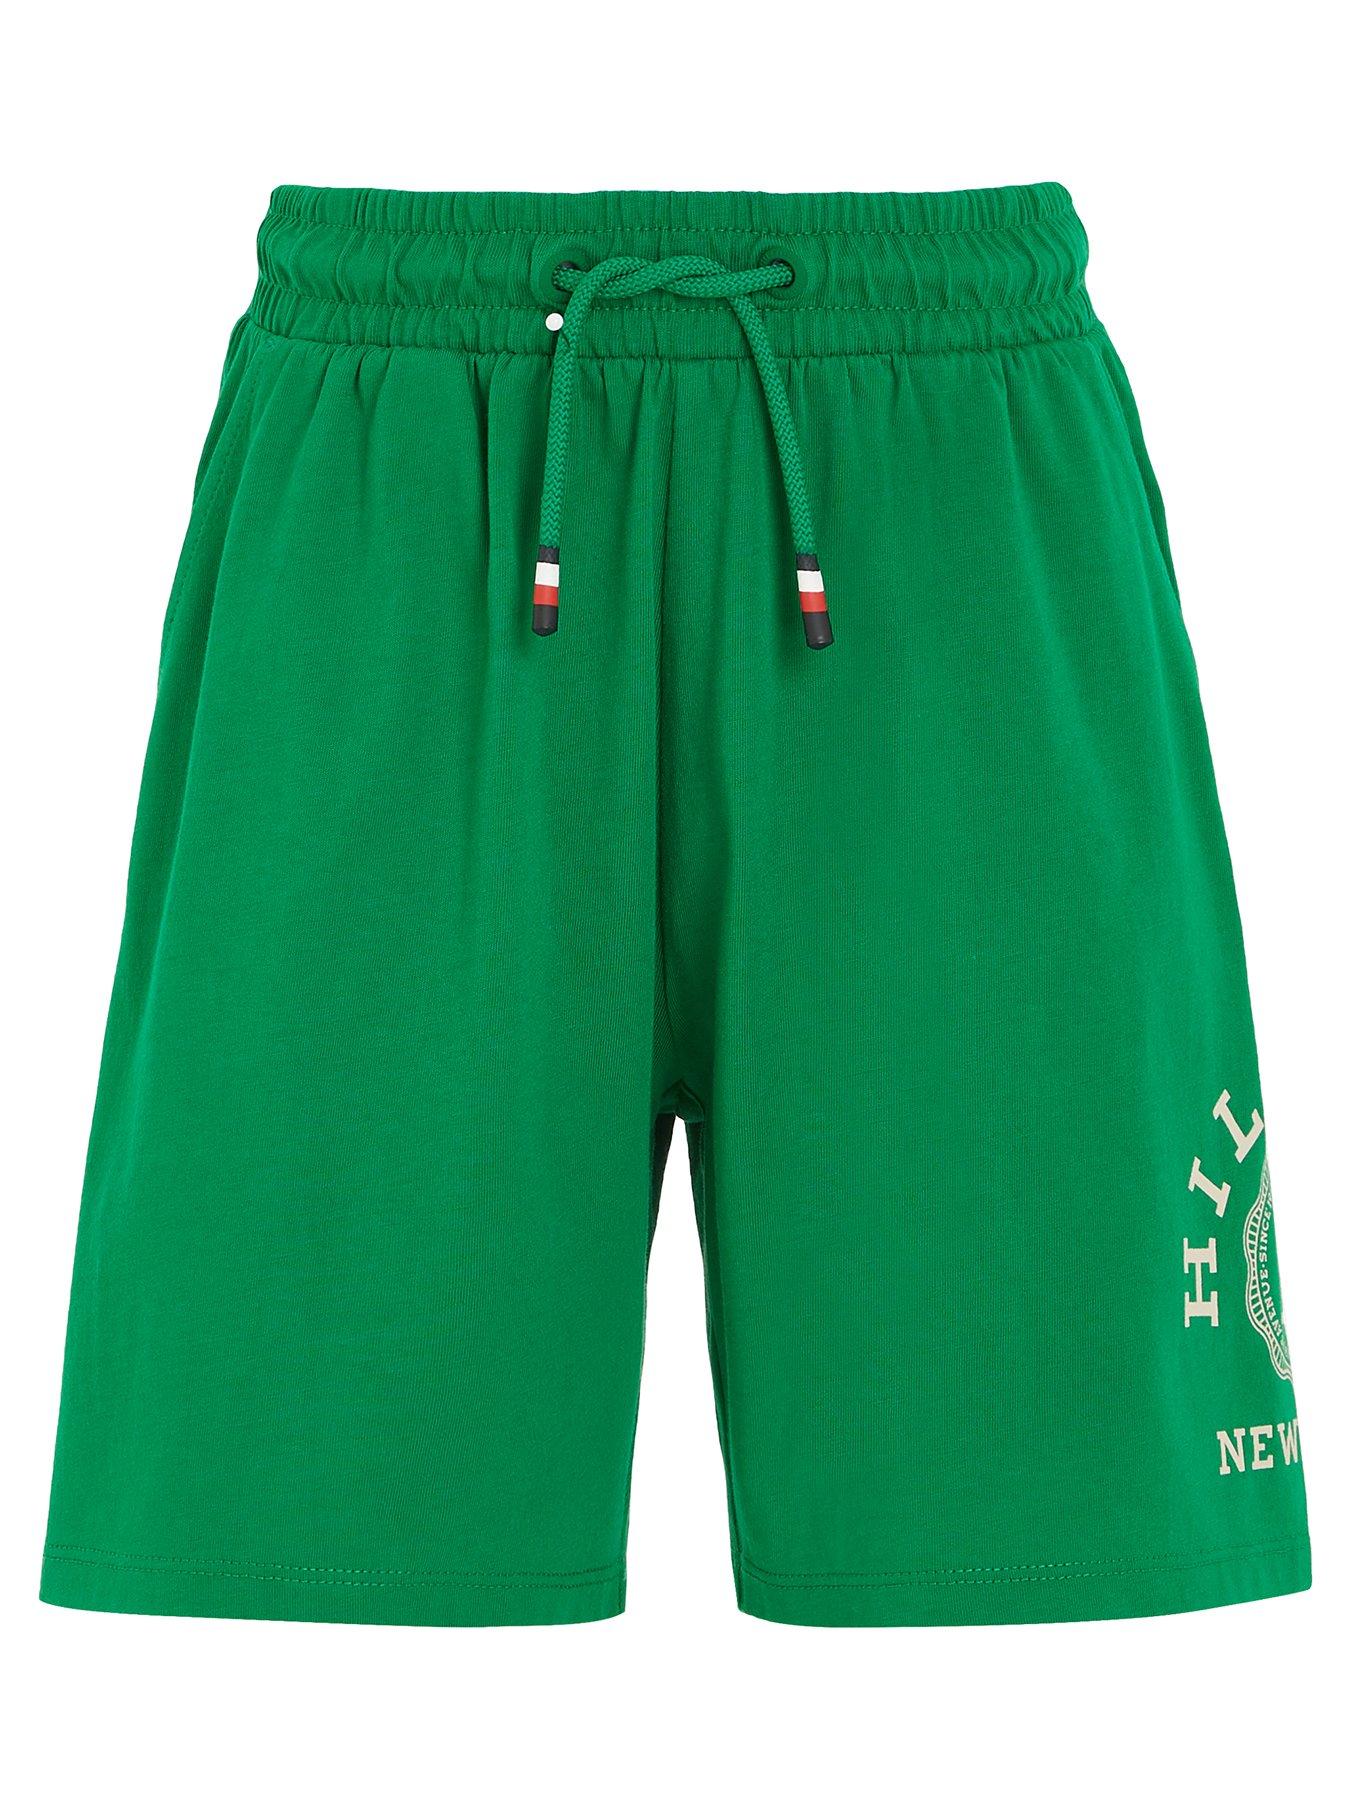 Tommy Hilfiger Mens Celtics Sweatshirt, Green, Medium